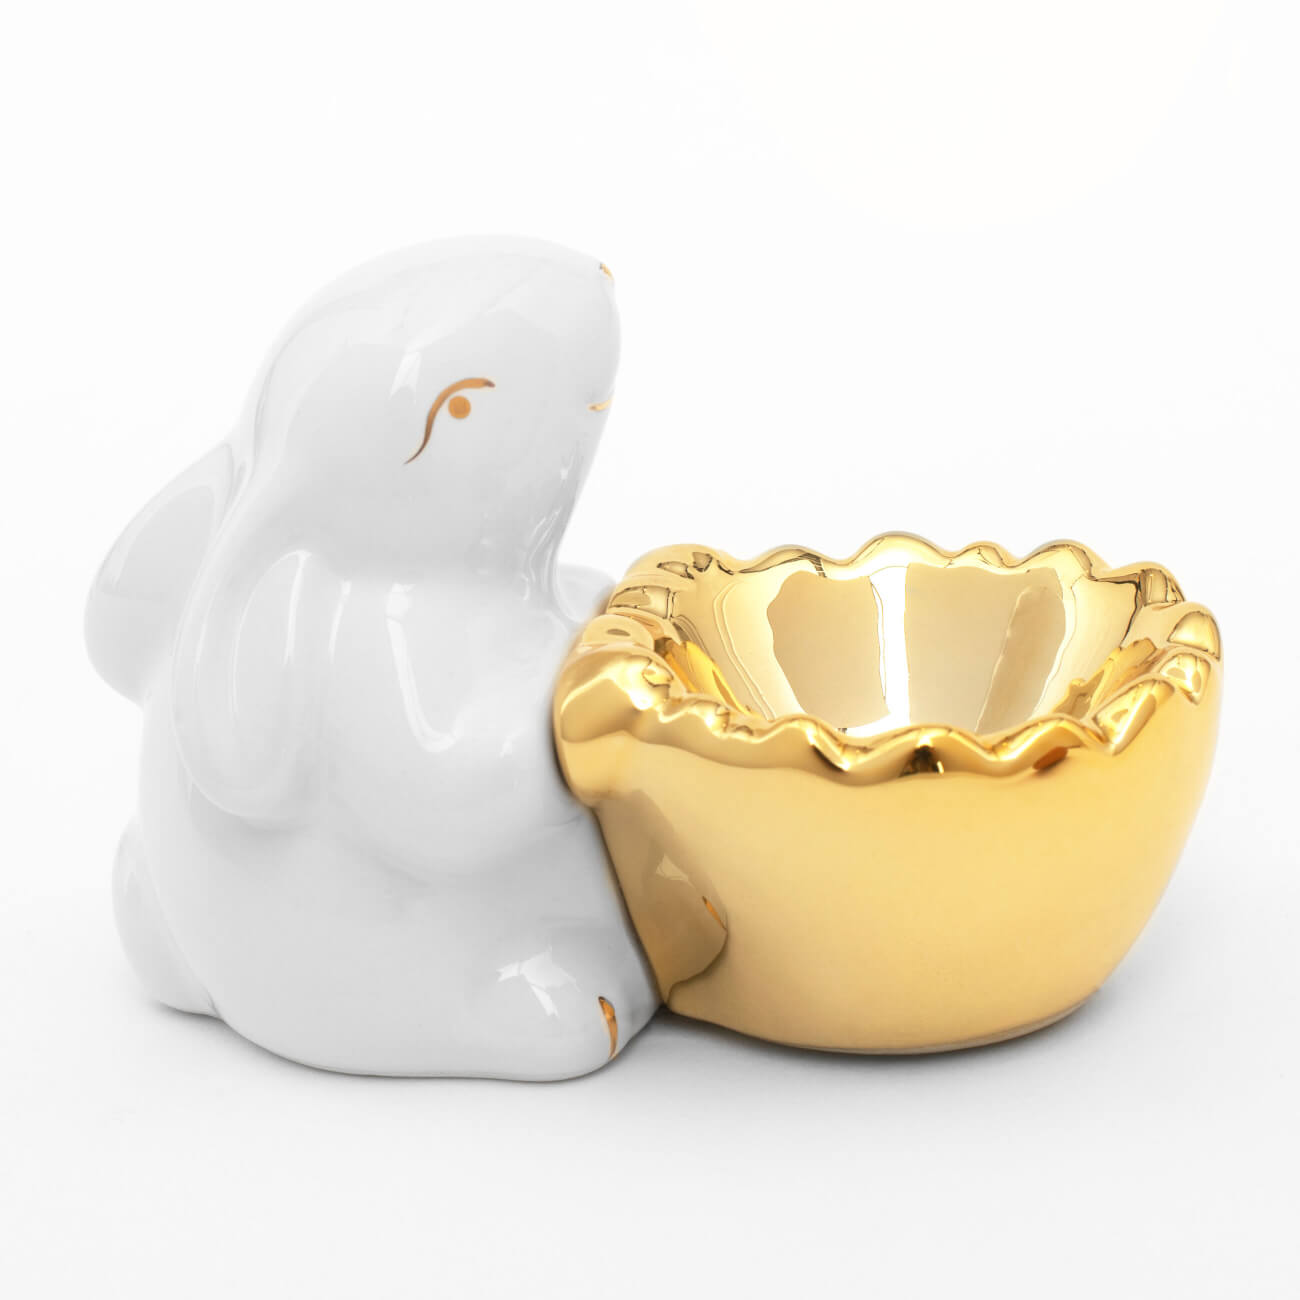 Подставка для яйца, 11 см, керамика, бело-золотистая, Кролик со скорлупой, Easter gold дьяволиада роковые яйца булгаков м